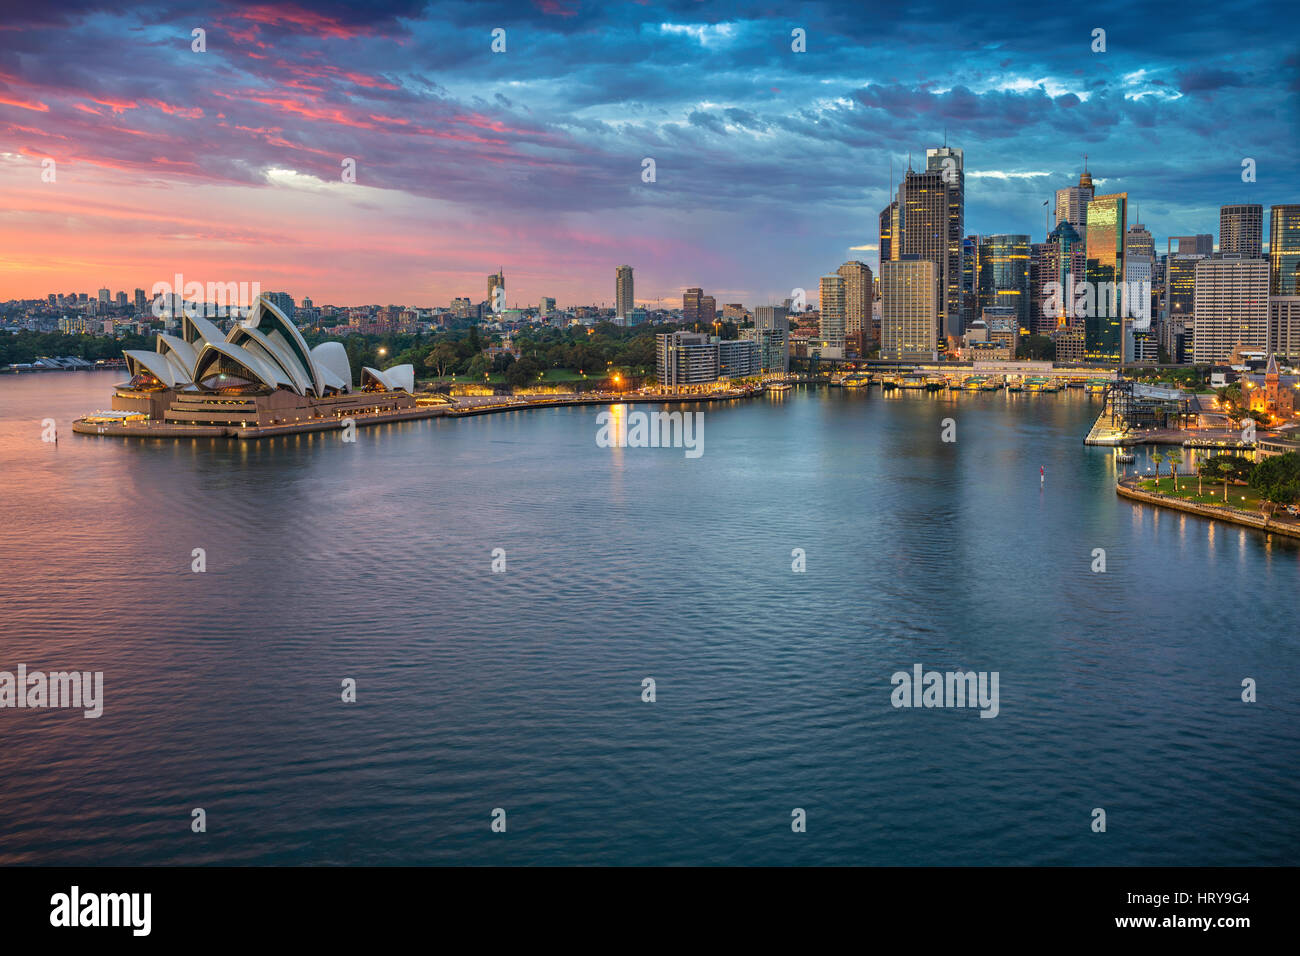 City of Sydney. Cityscape image of Sydney, Australia during sunrise. Stock Photo